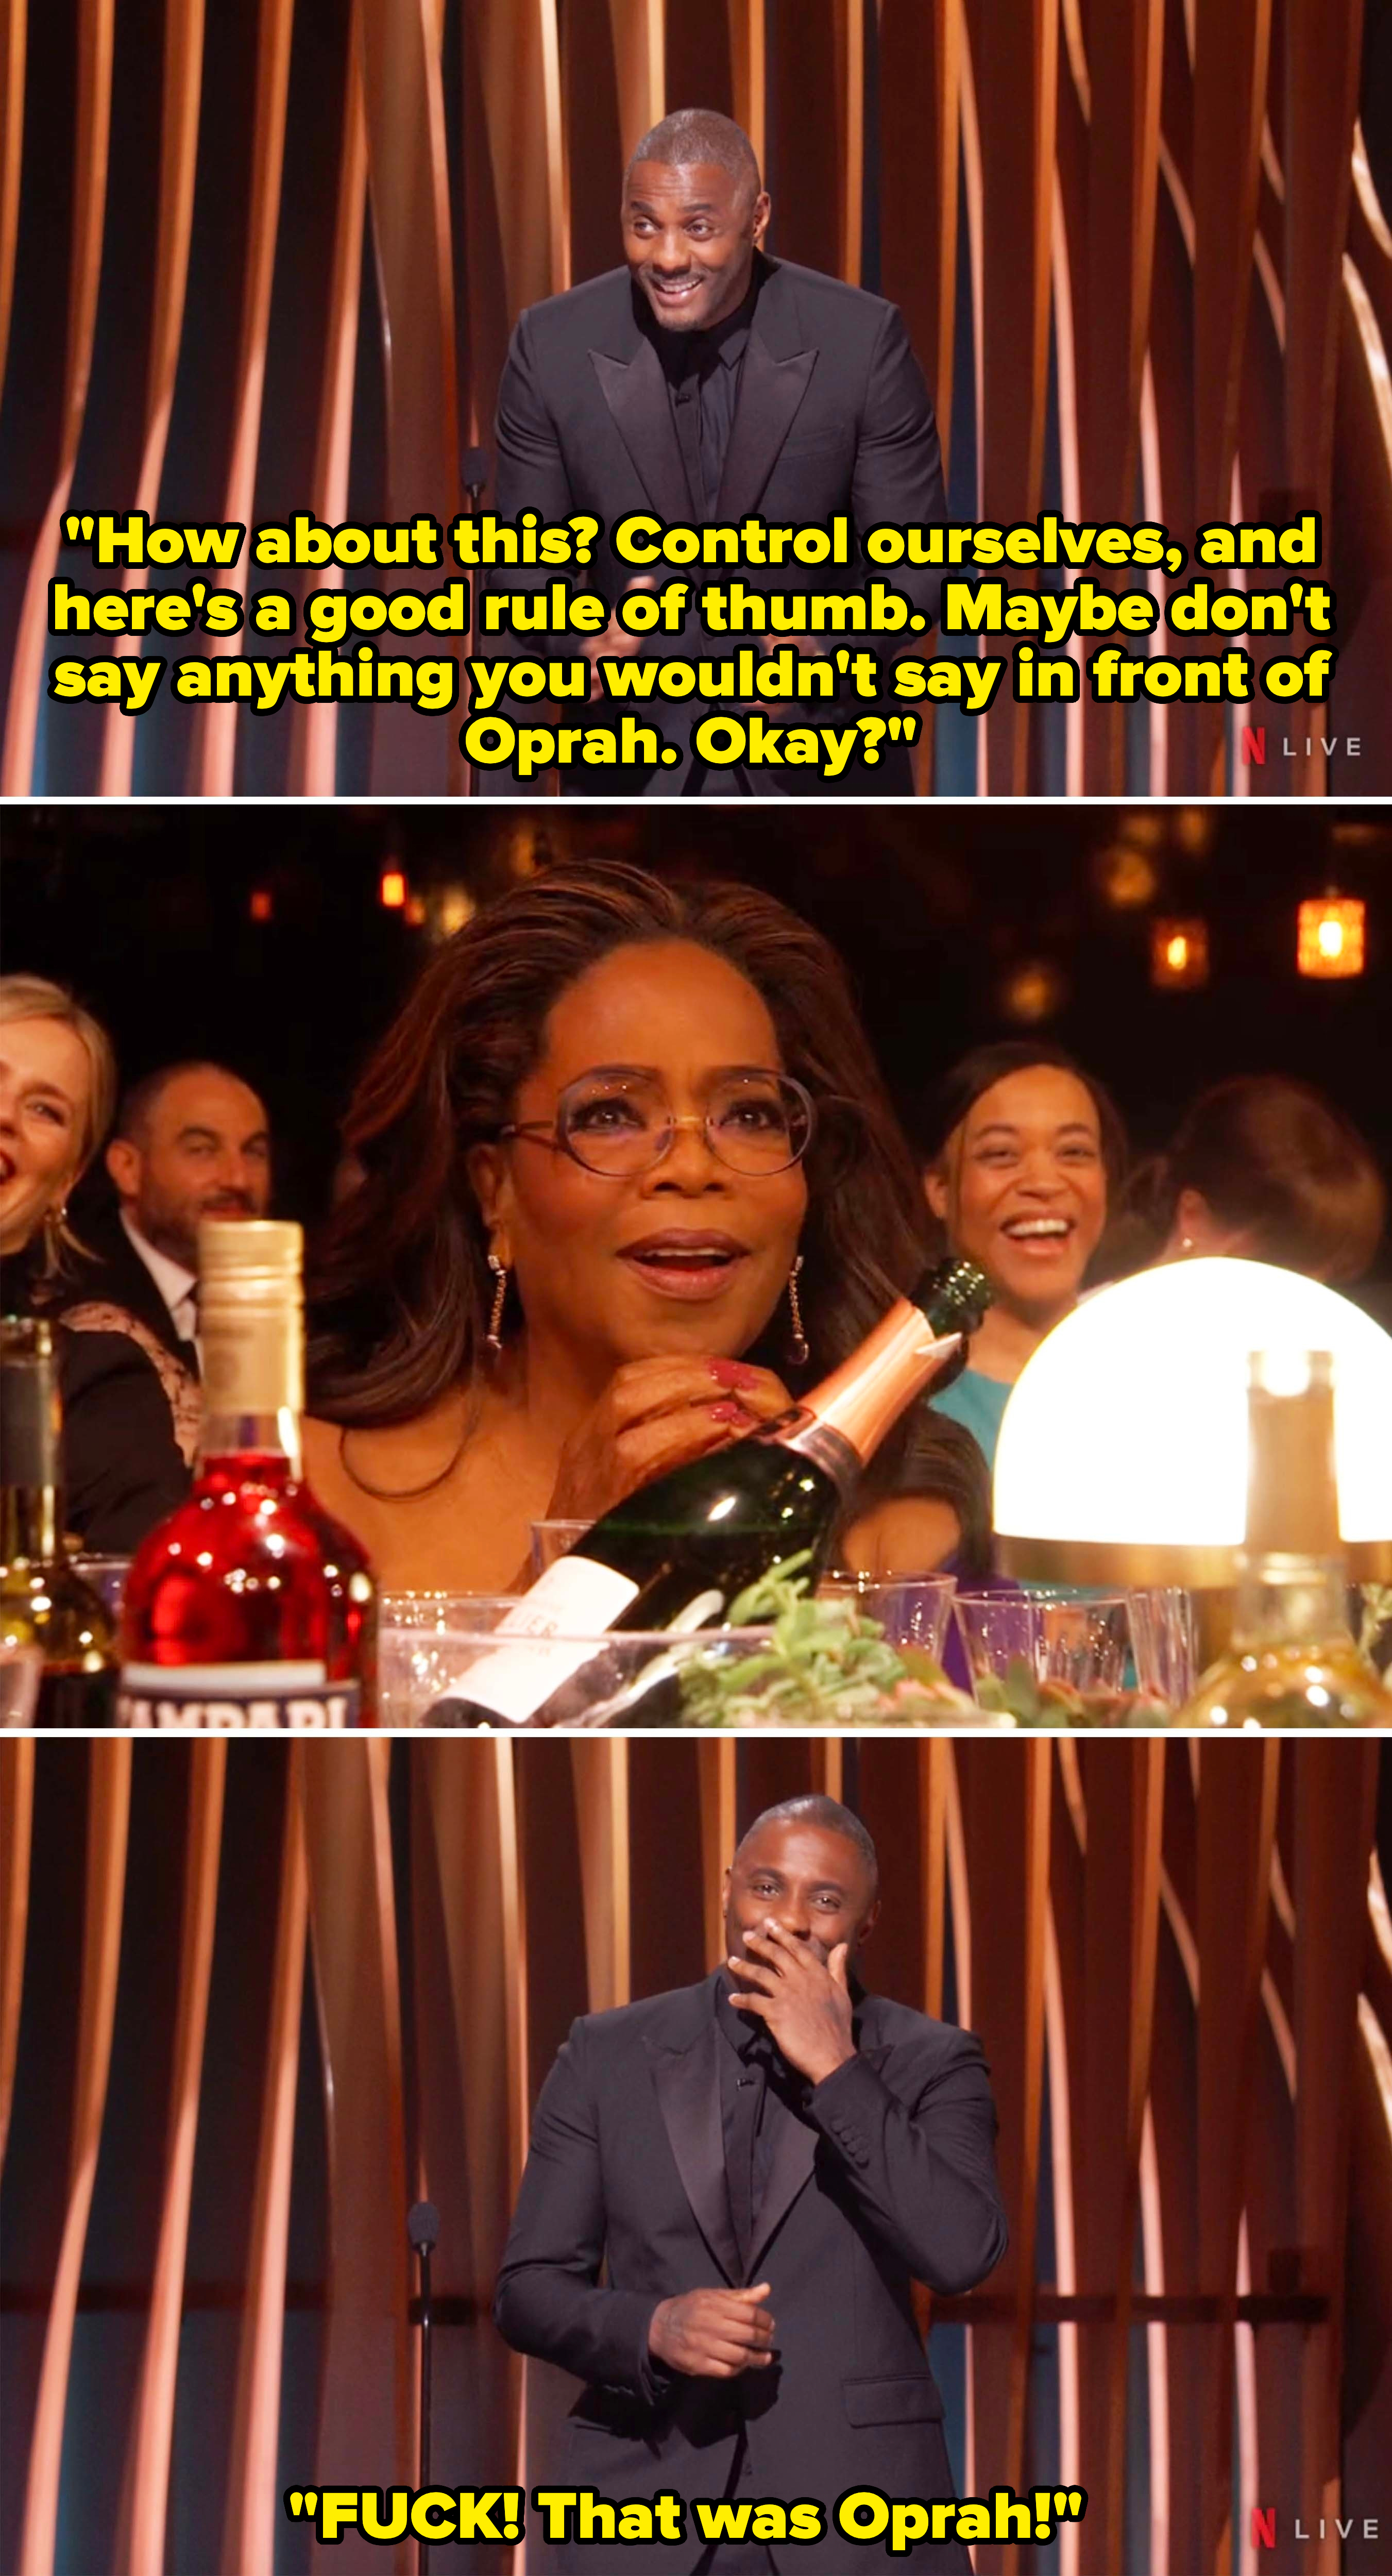 &quot;Fuck! That was Oprah!&quot;